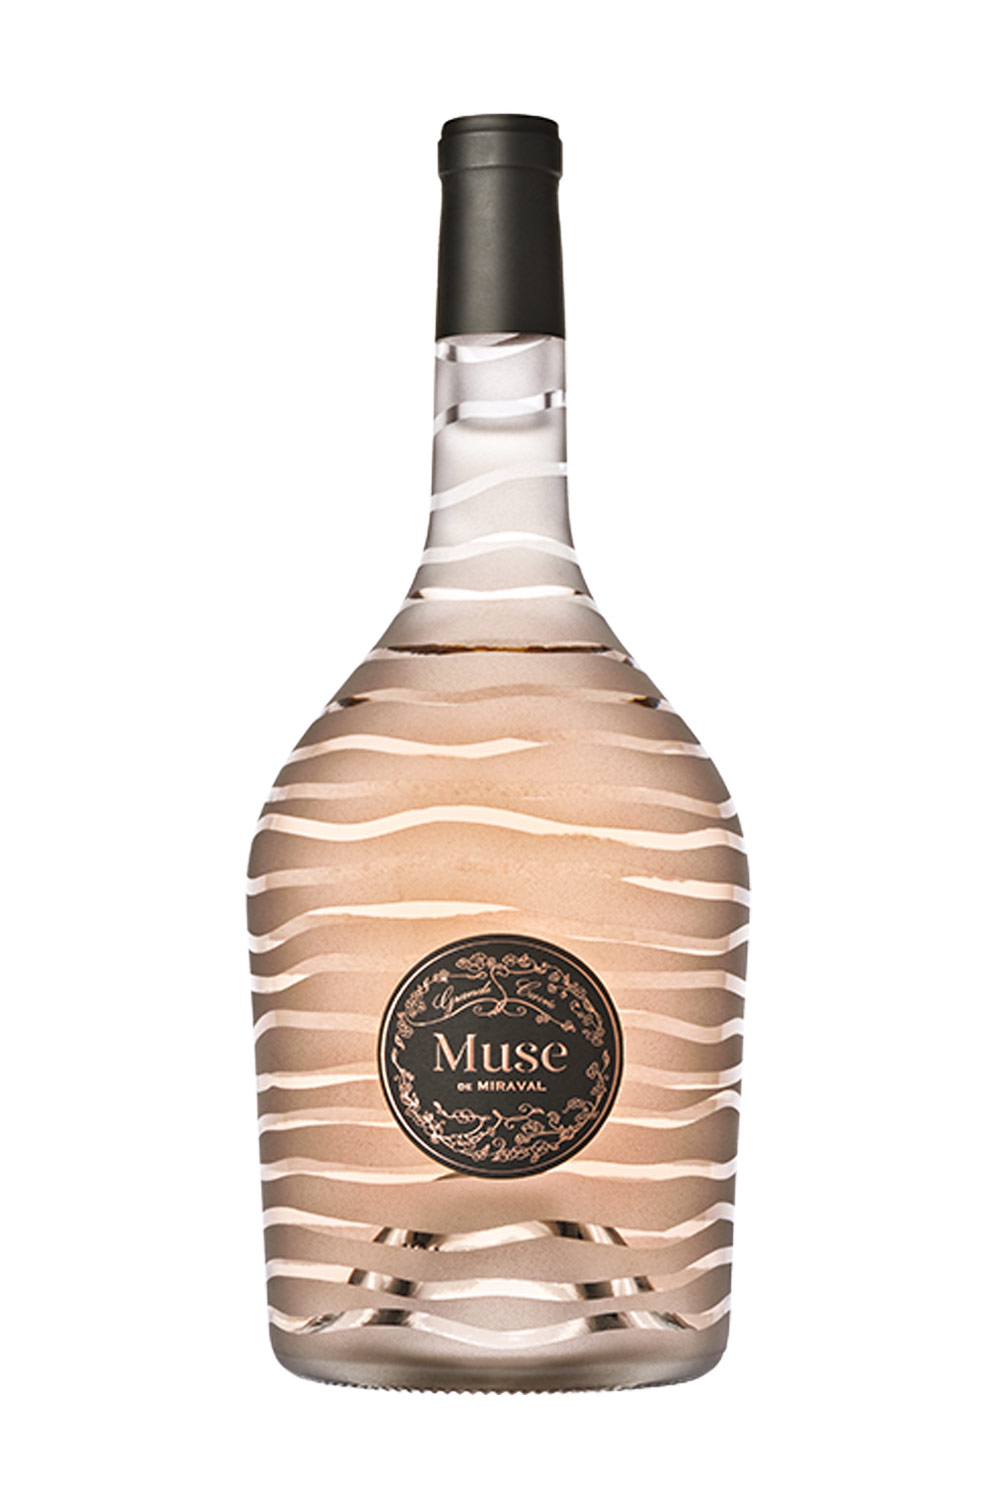 kaufen Provence bei AOP | de - Italien 2019 Magnum Miraval BIO aus Senti Côtes Online de Vini Muse Miraval Weine